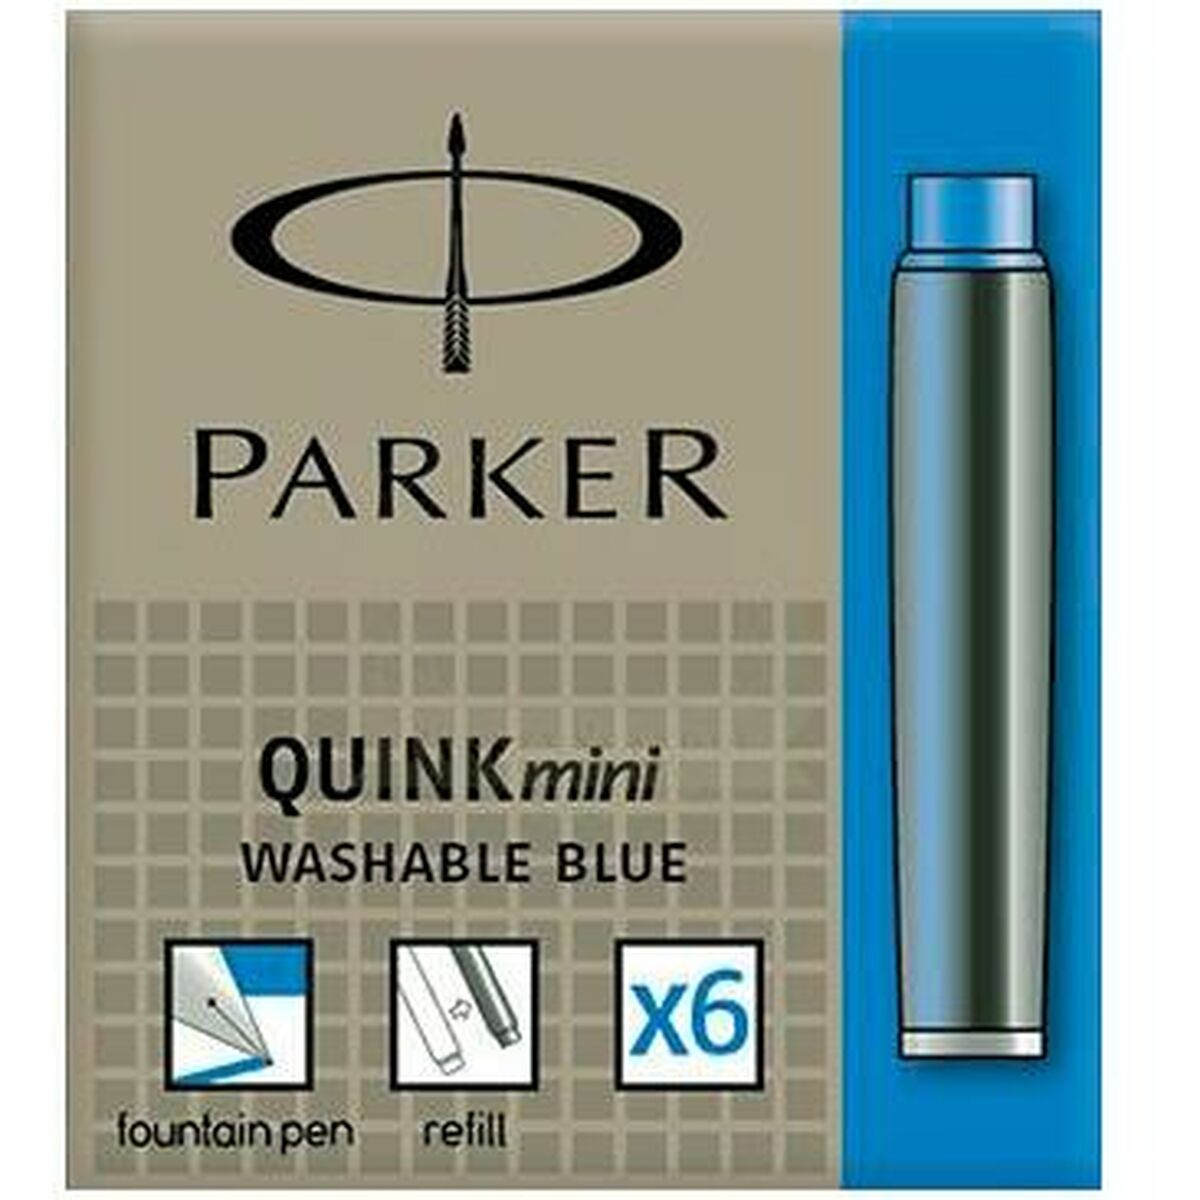 Bläckpåfyllning för penna Parker Quink Mini 6 Delar Blå (30 antal)-Kontor och Kontorsmaterial, Kulspetspennor, pennor och skrivverktyg-Parker-peaceofhome.se